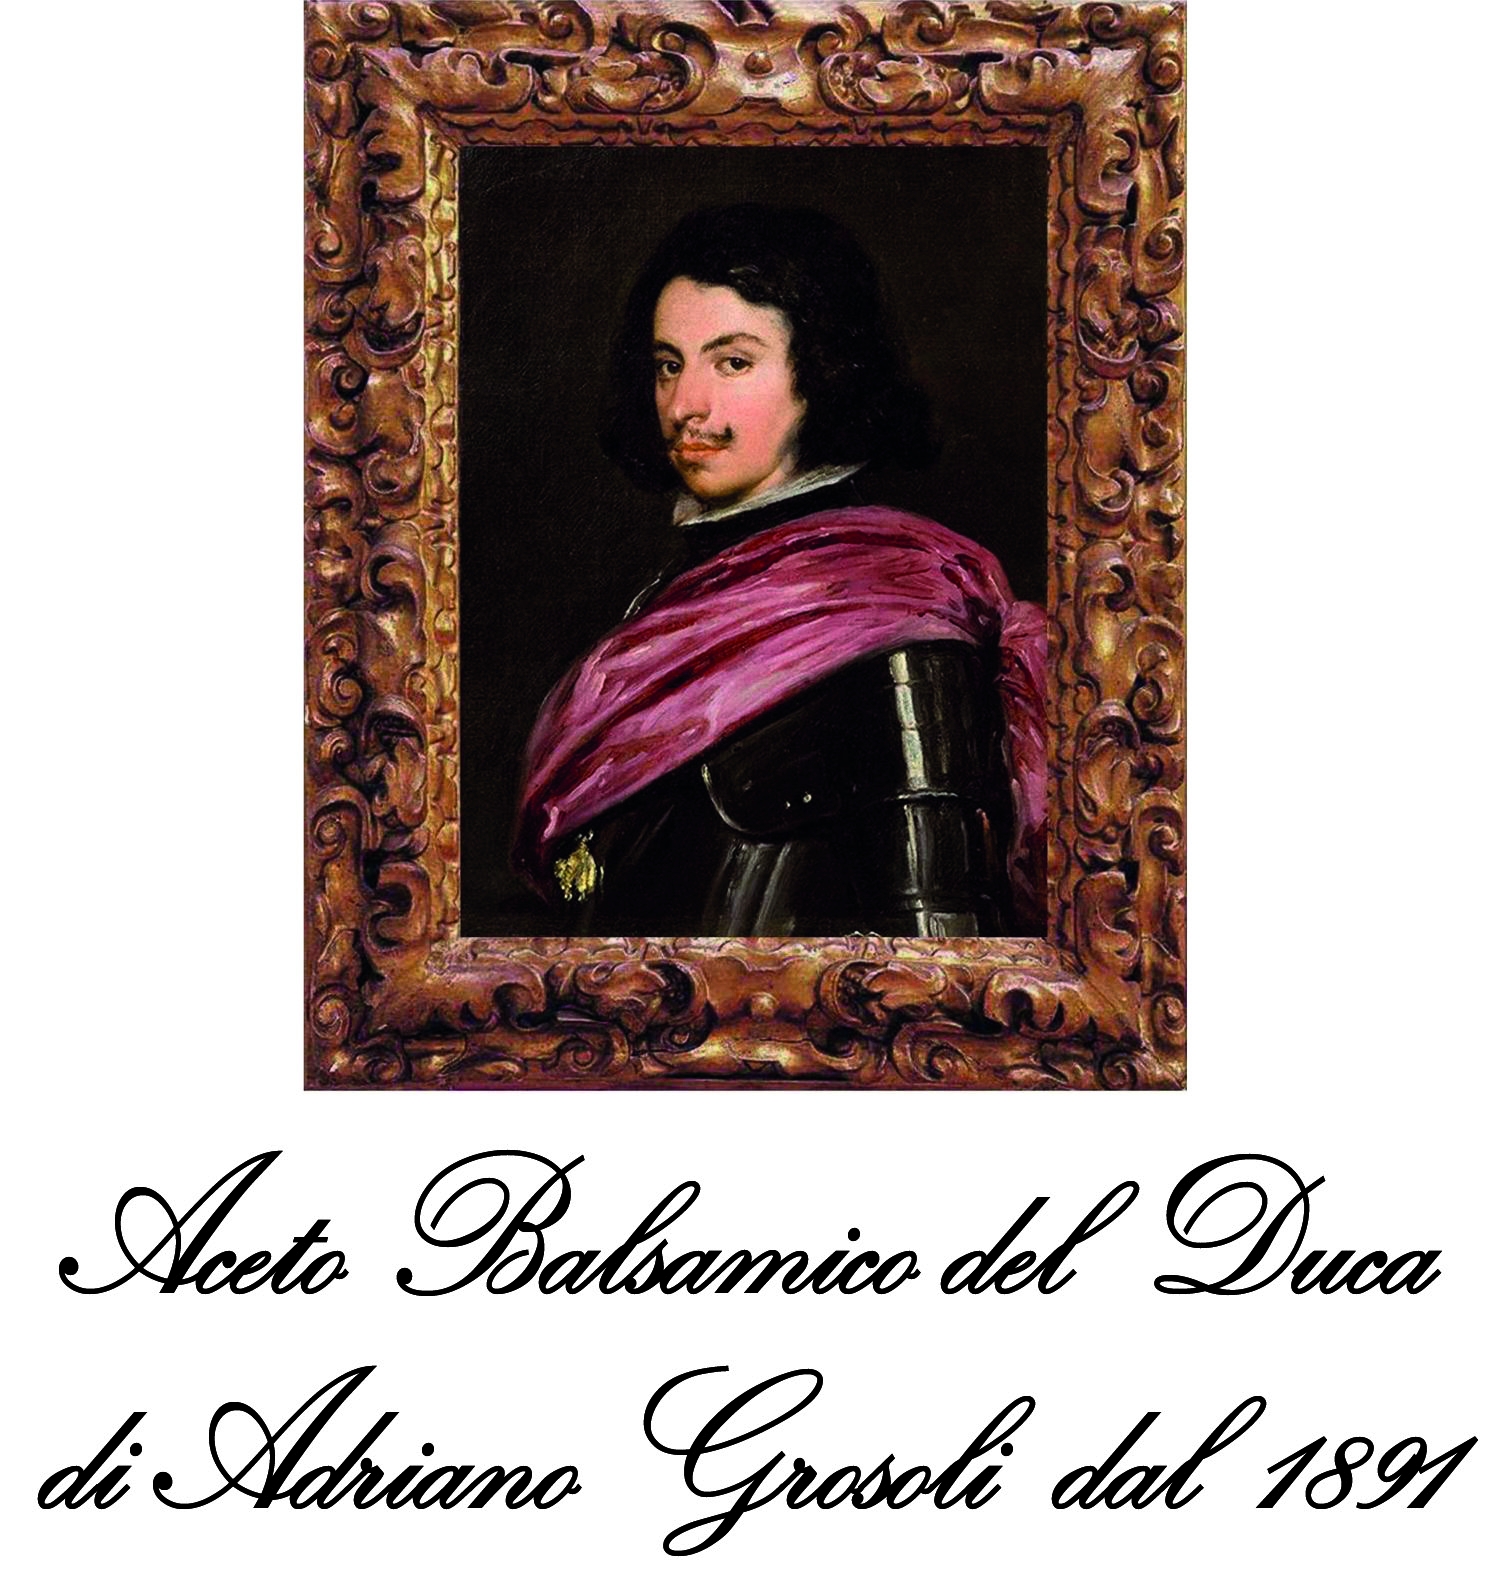 Aceto Balsamico del Duca di Adriano Grosoli S.R.L.